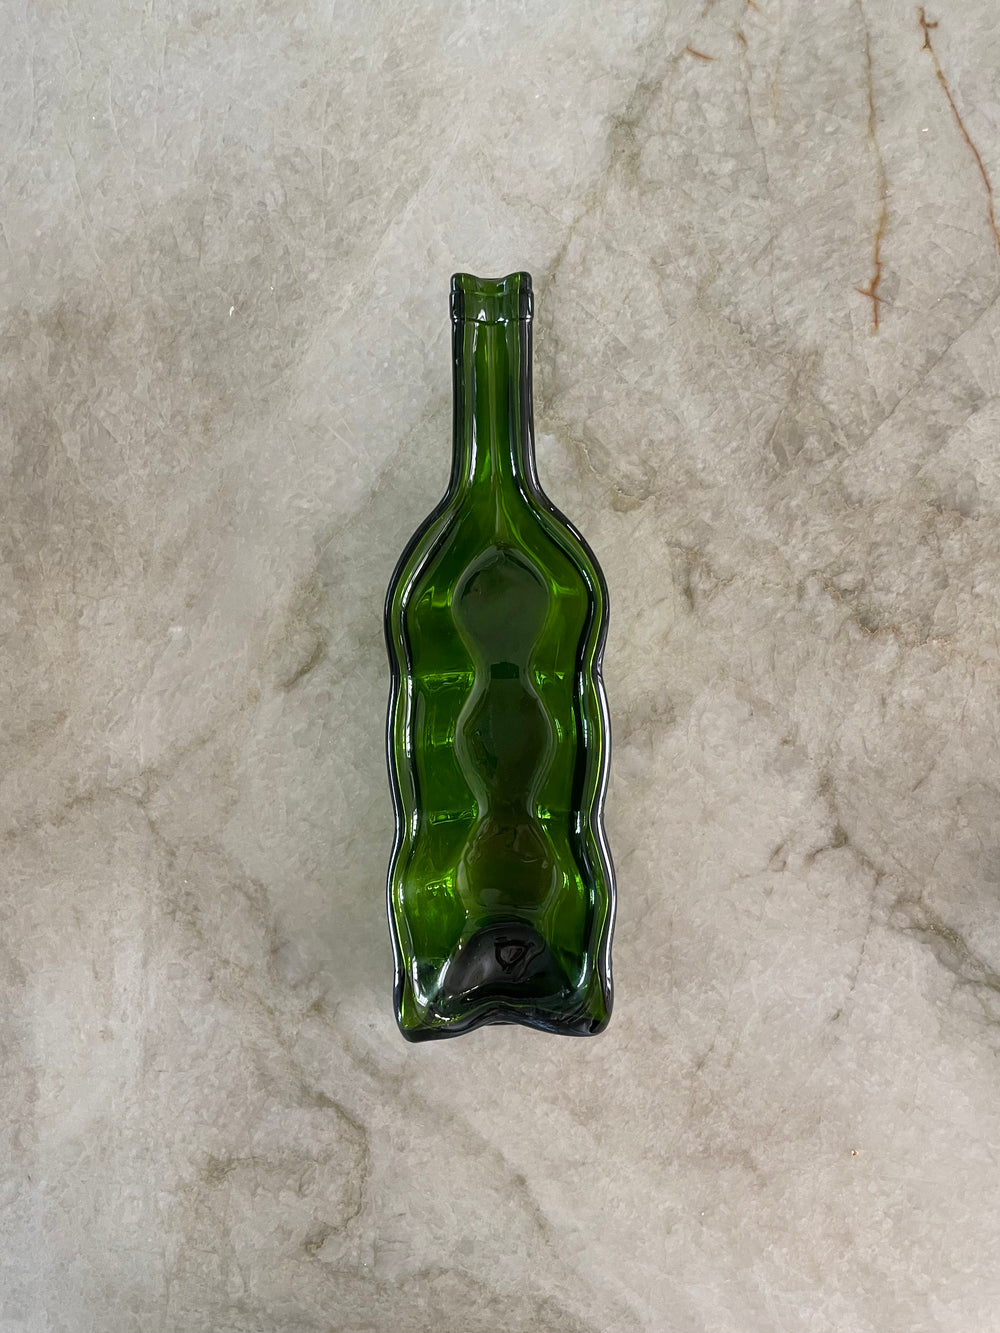 Slumped wine bottle candle holder.